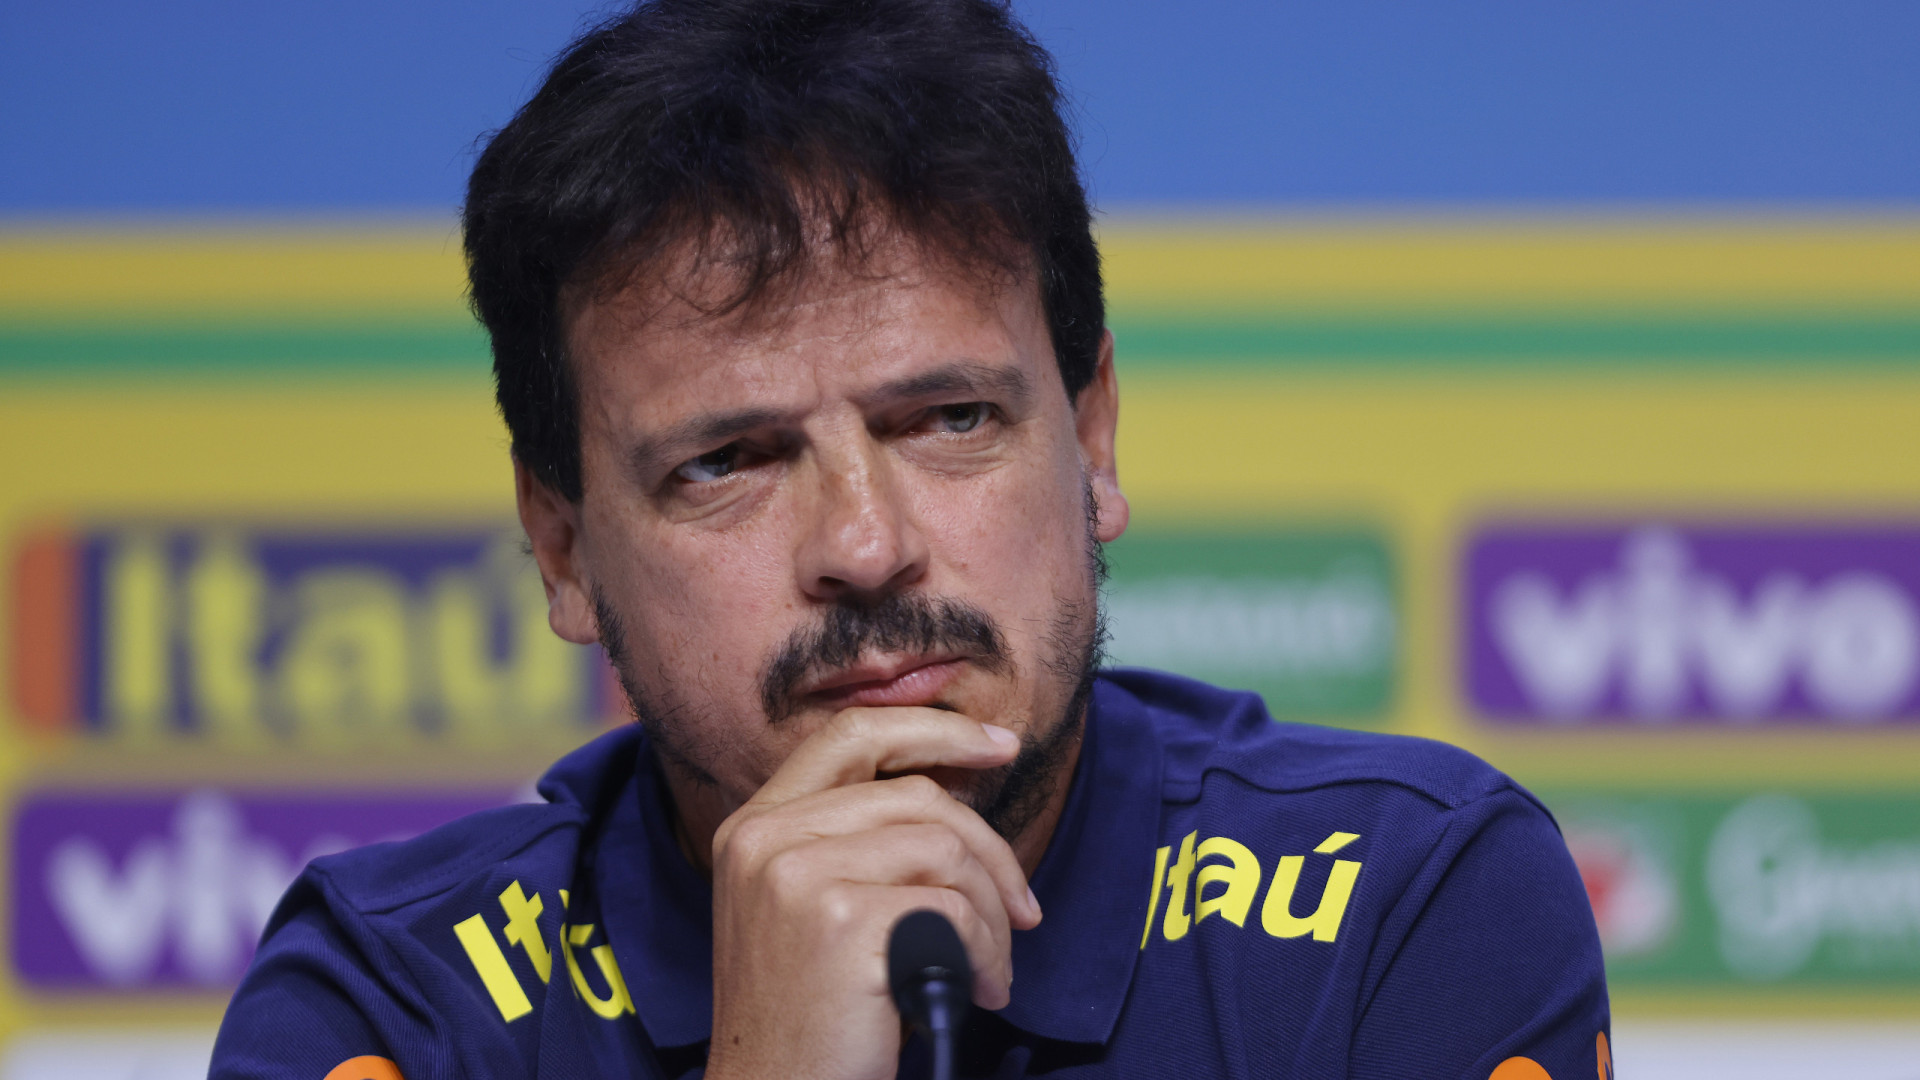 Diniz mostra preocupação com Messi, mas confia em reação do Brasil: 'Geração talentosa'